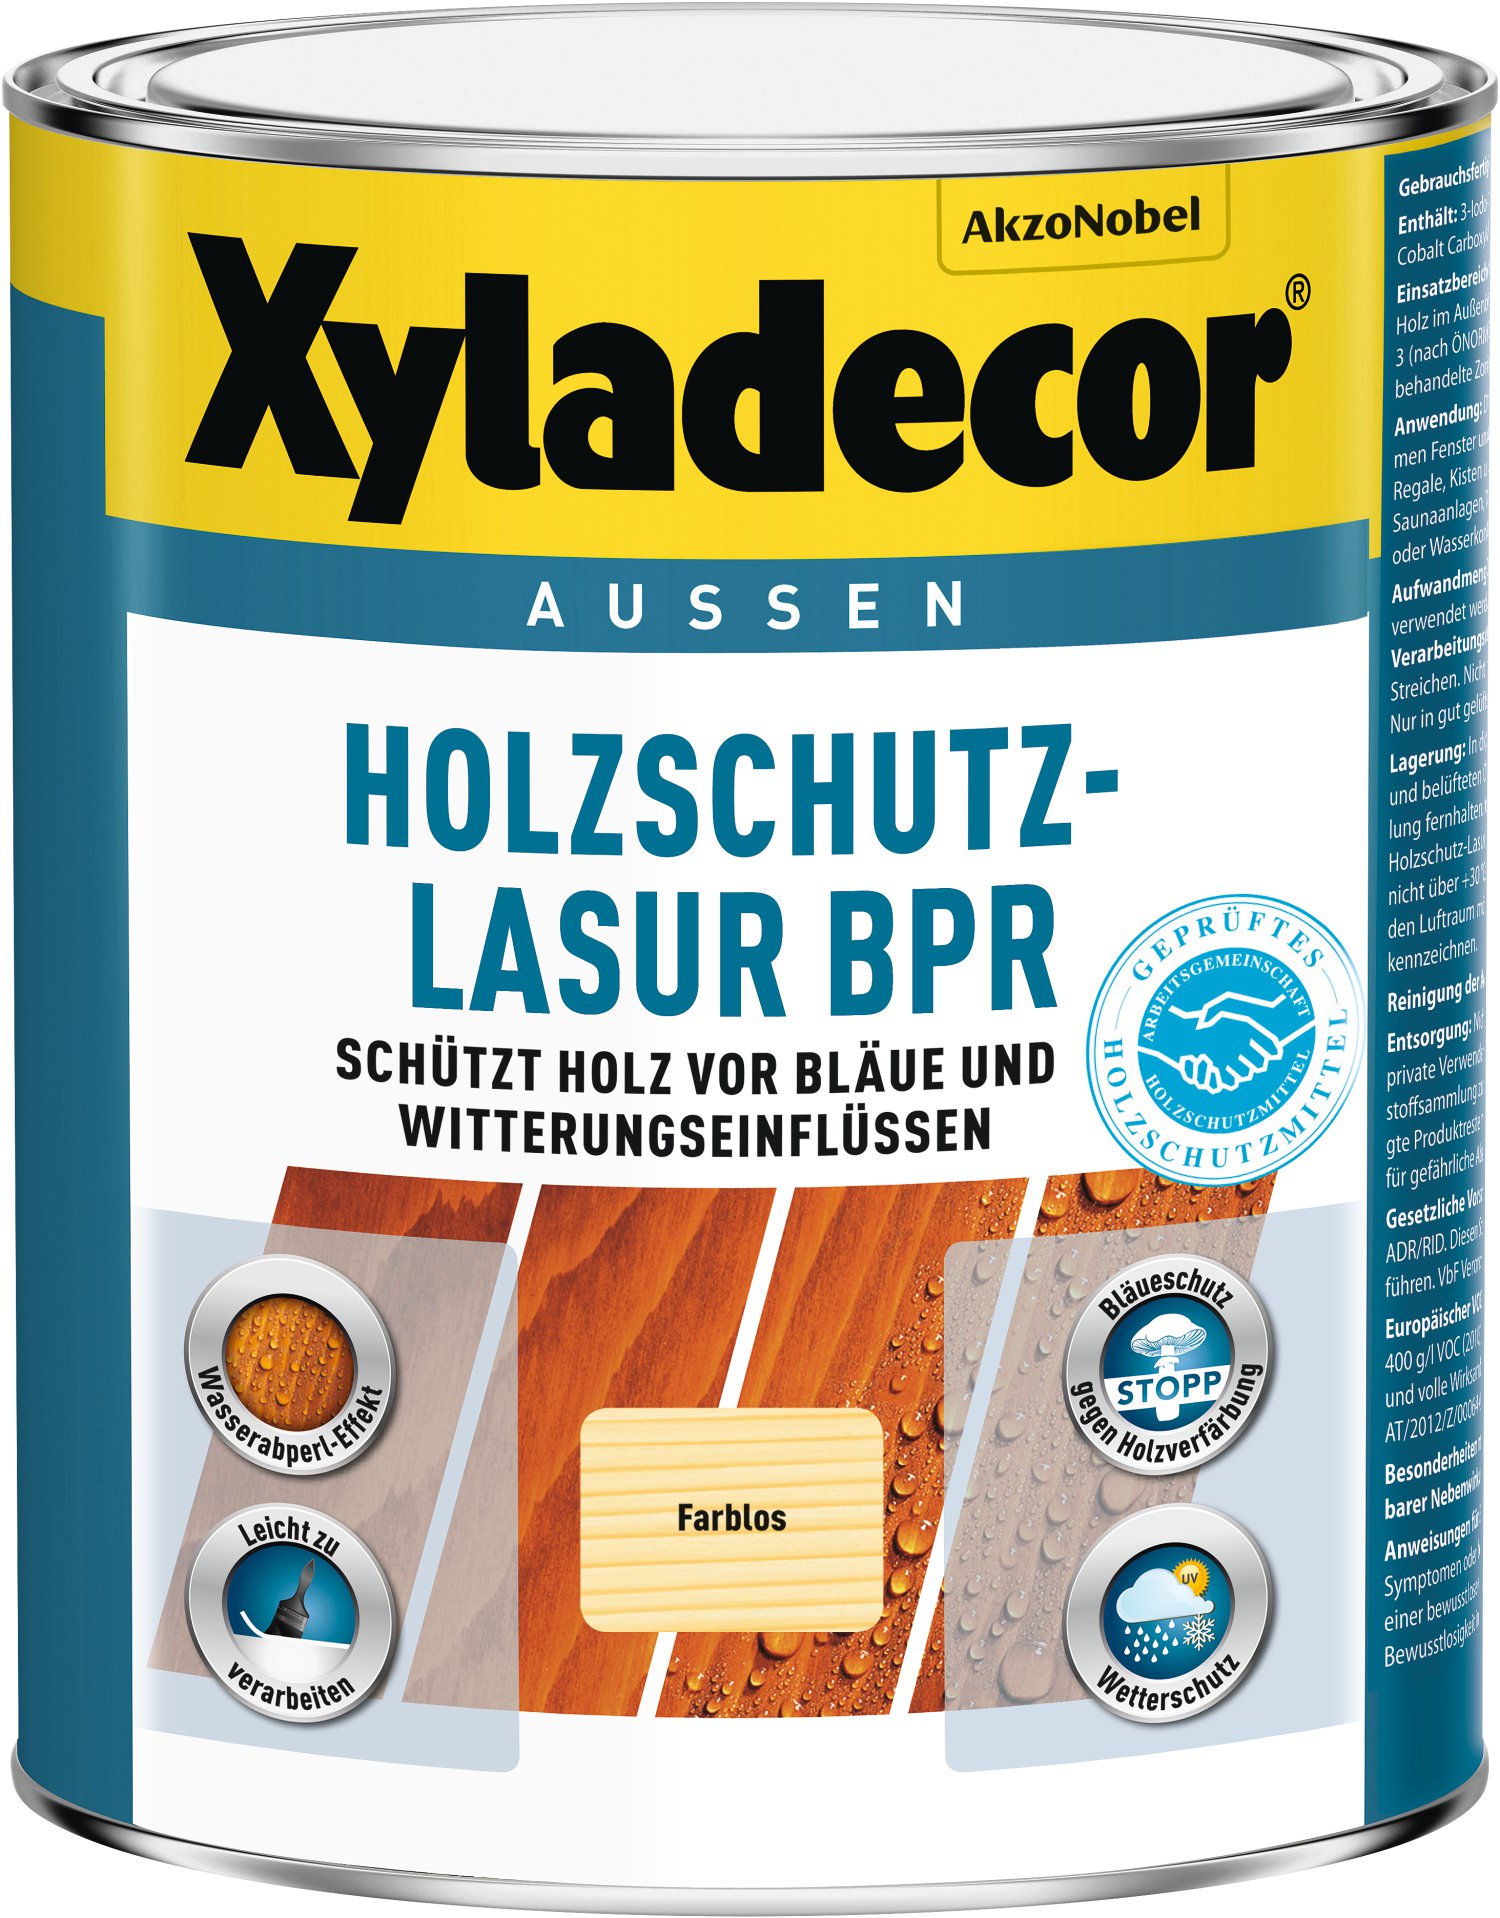 XYLADECOR Holzschutz-Lasur BPR farblos 1 l